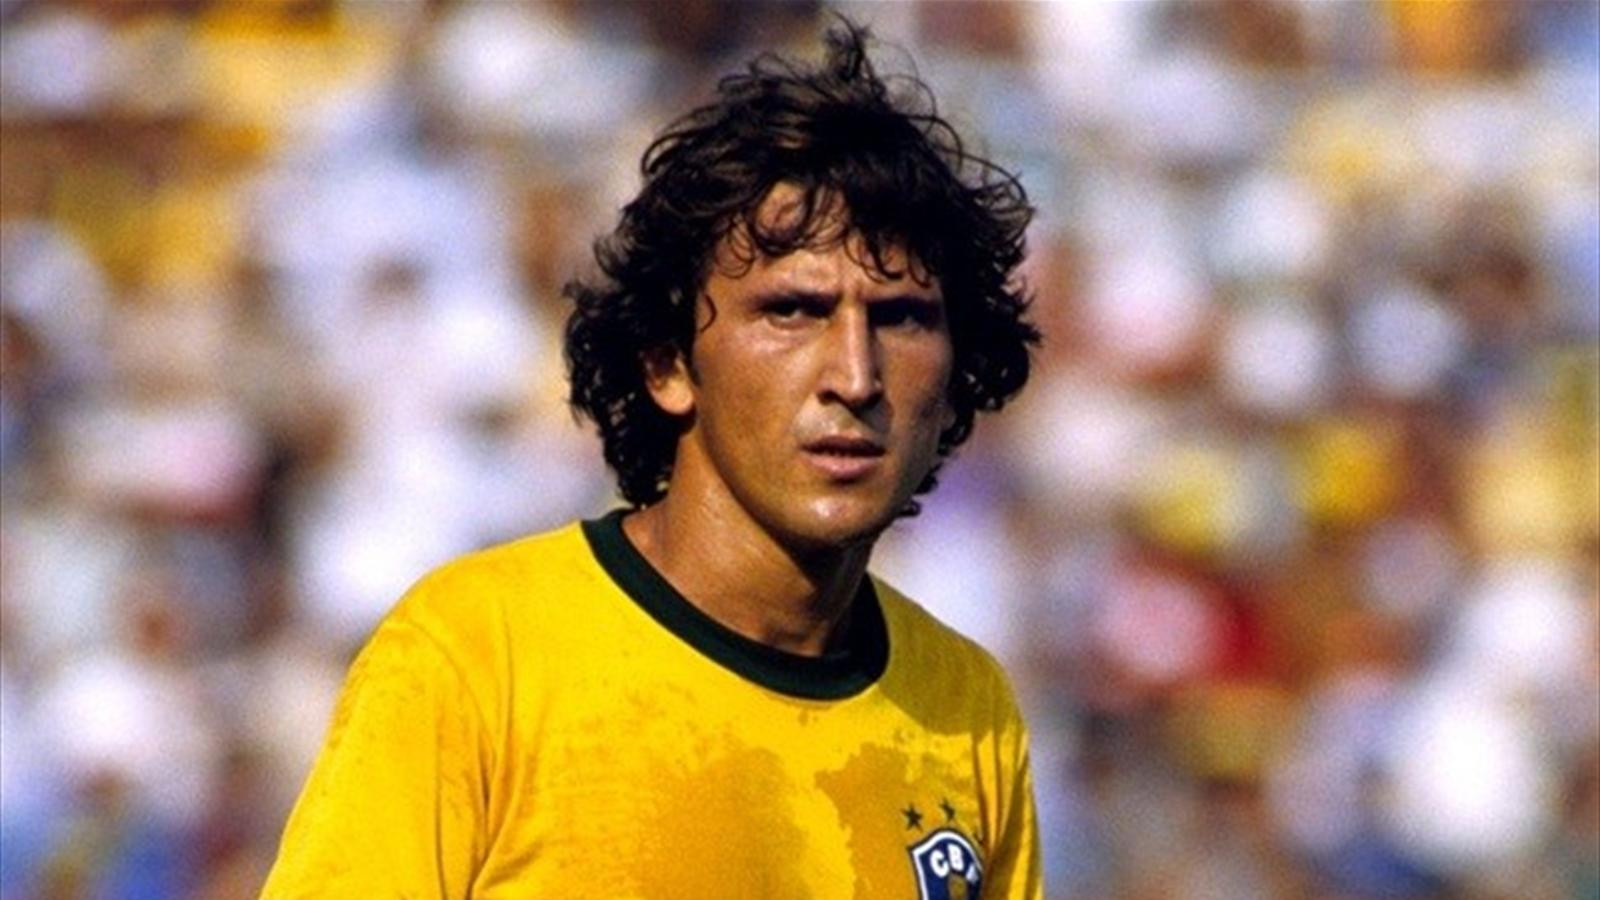 Zico là cái tên có sức ảnh hưởng lớn nhất đến bóng đá Brazil chỉ sau Pele và Garrincha